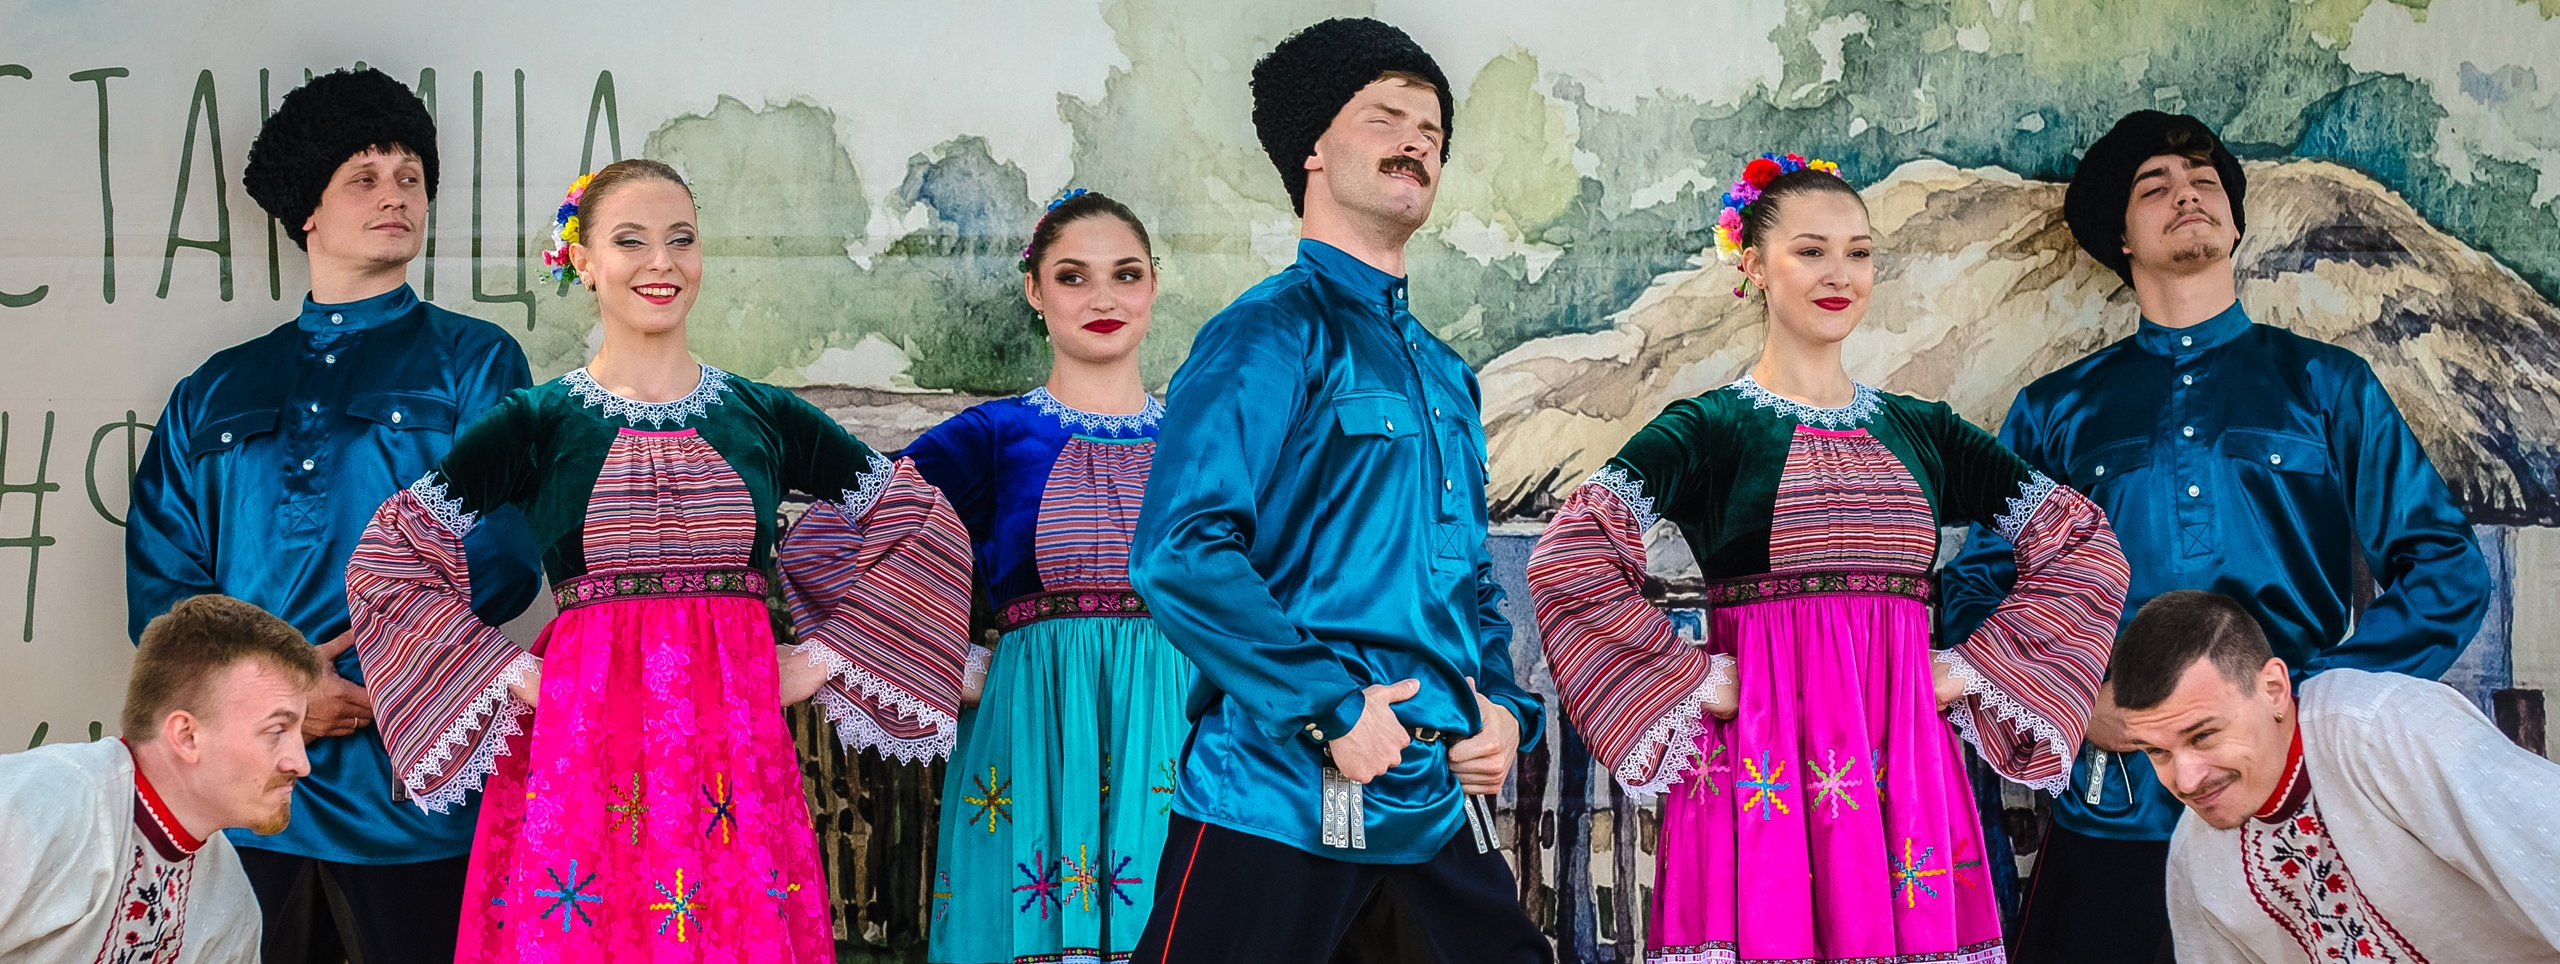 Межрегиональный фестиваль традиционной казачьей культуры «Казачья застава» 